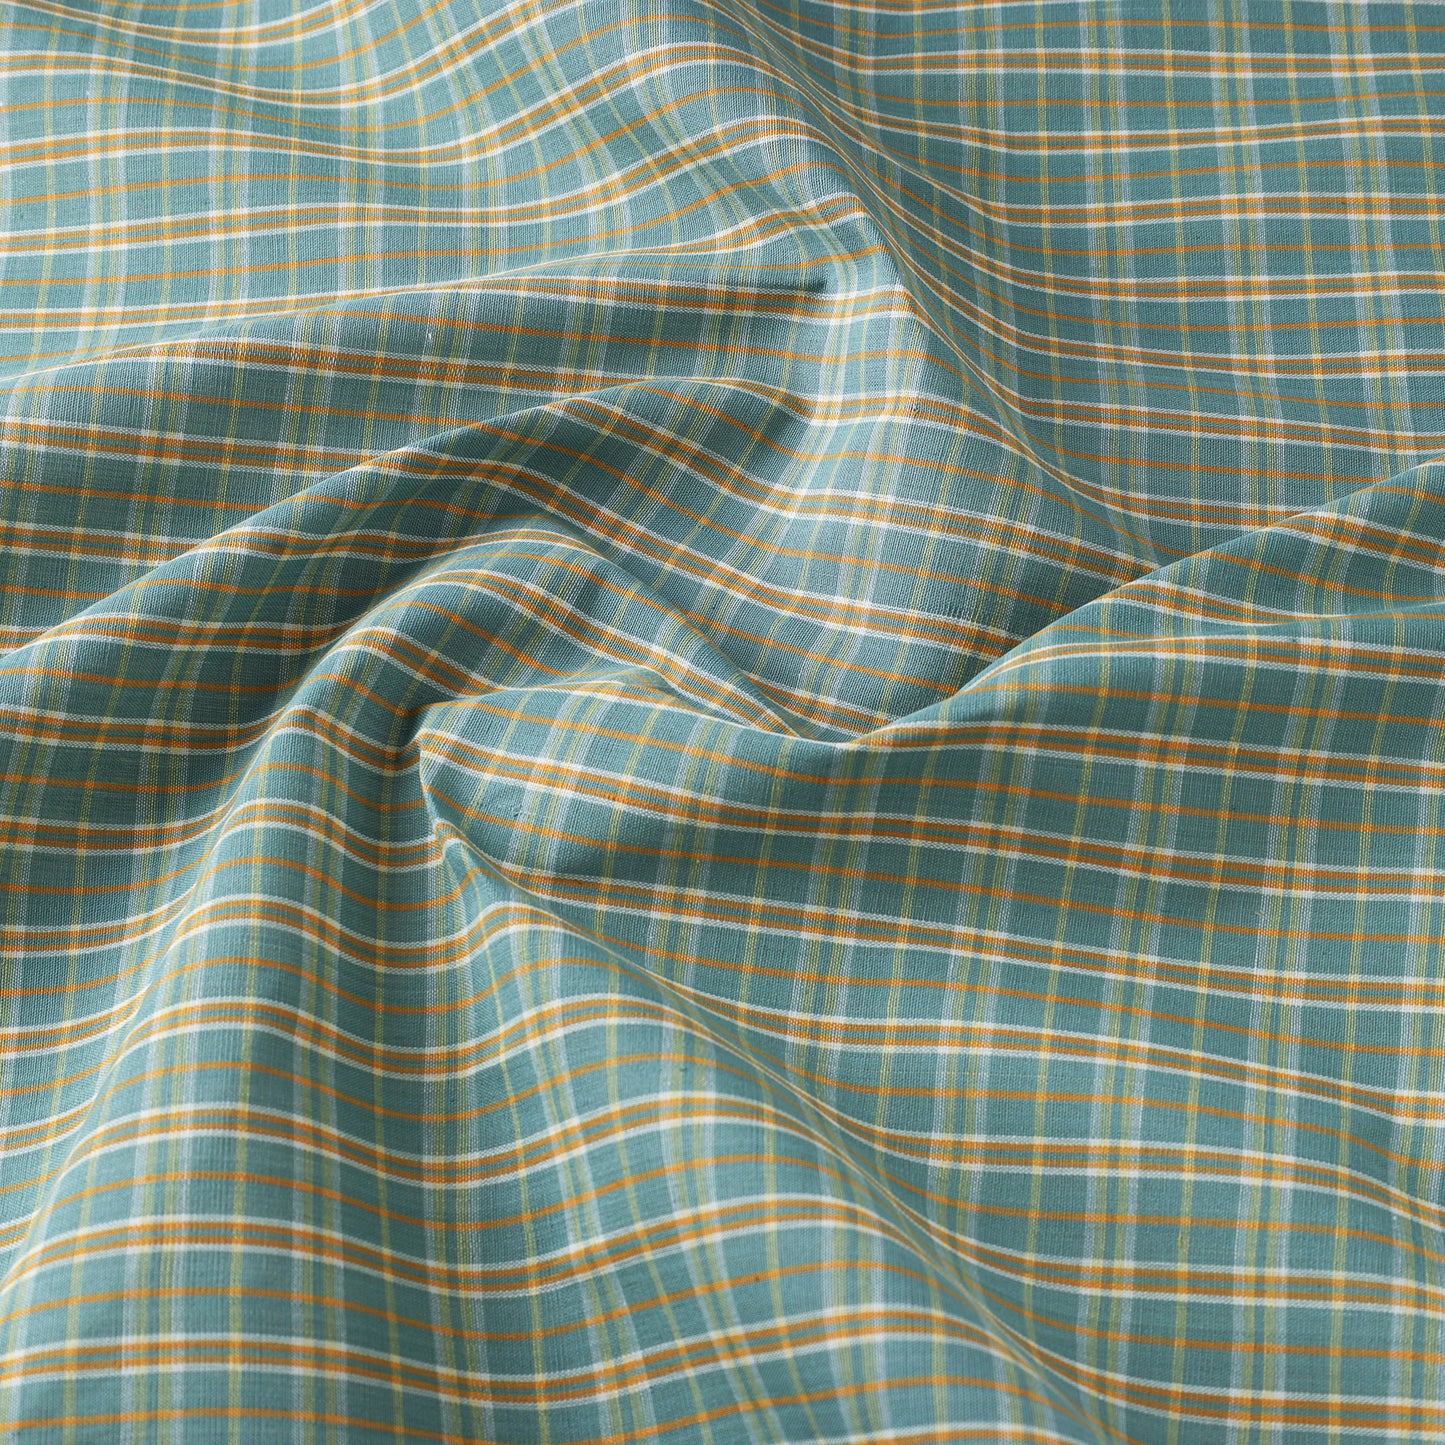 Mangalagiri Handloom Fabrics